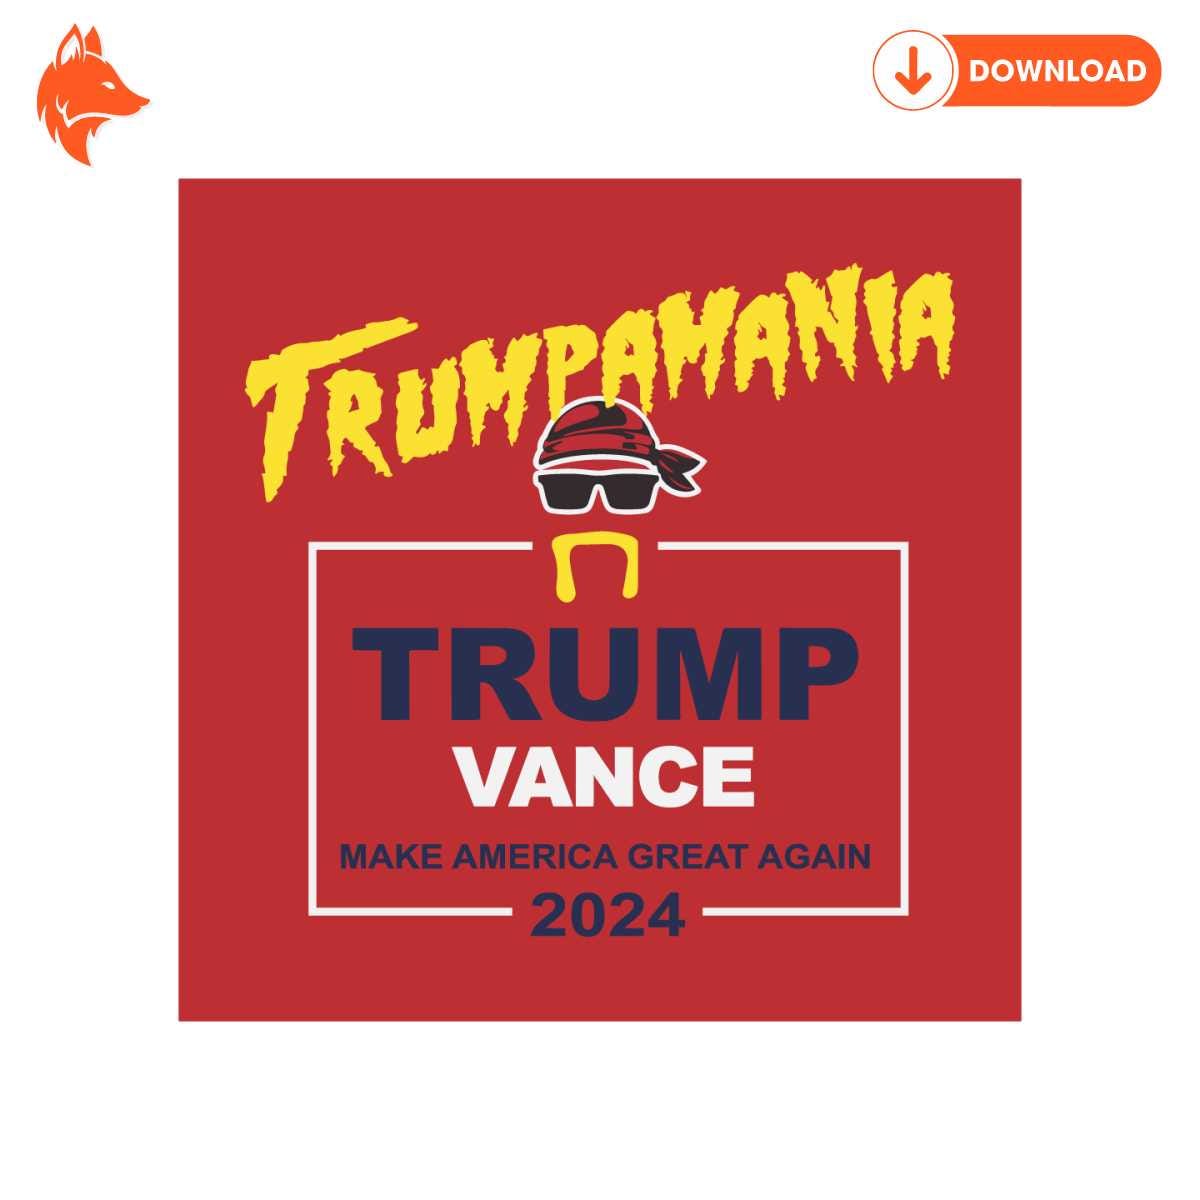 Free Trumpamania Trump Vance Make America Great Again SVG